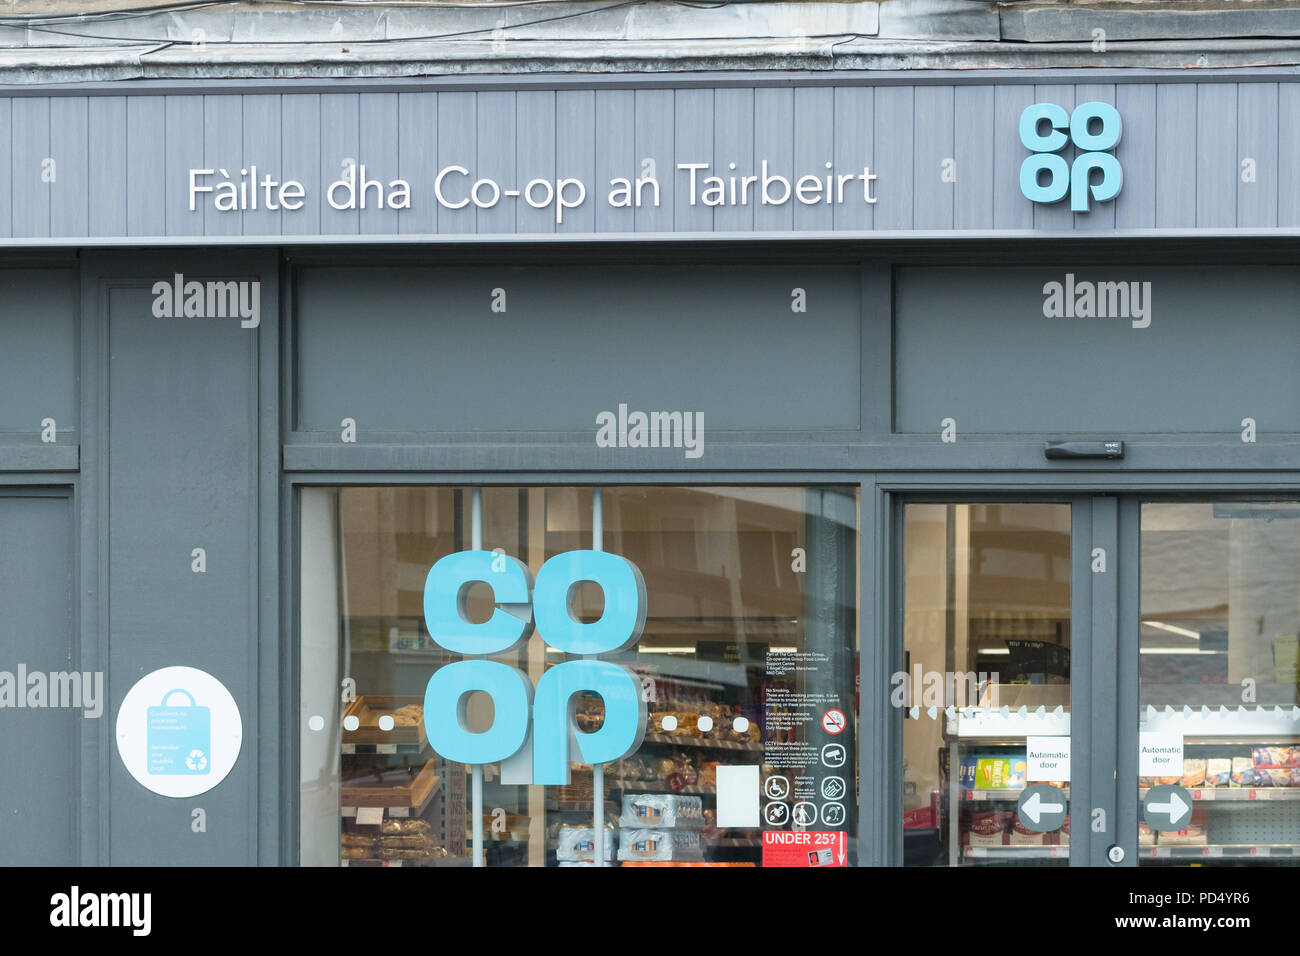 Il gaelico scozzese segno sul negozio coop a Tarbert - Failte dha co-op un Tairbeirt - benvenuti al co-op Tarbert, Argyll and Bute, Scotland, Regno Unito Foto Stock